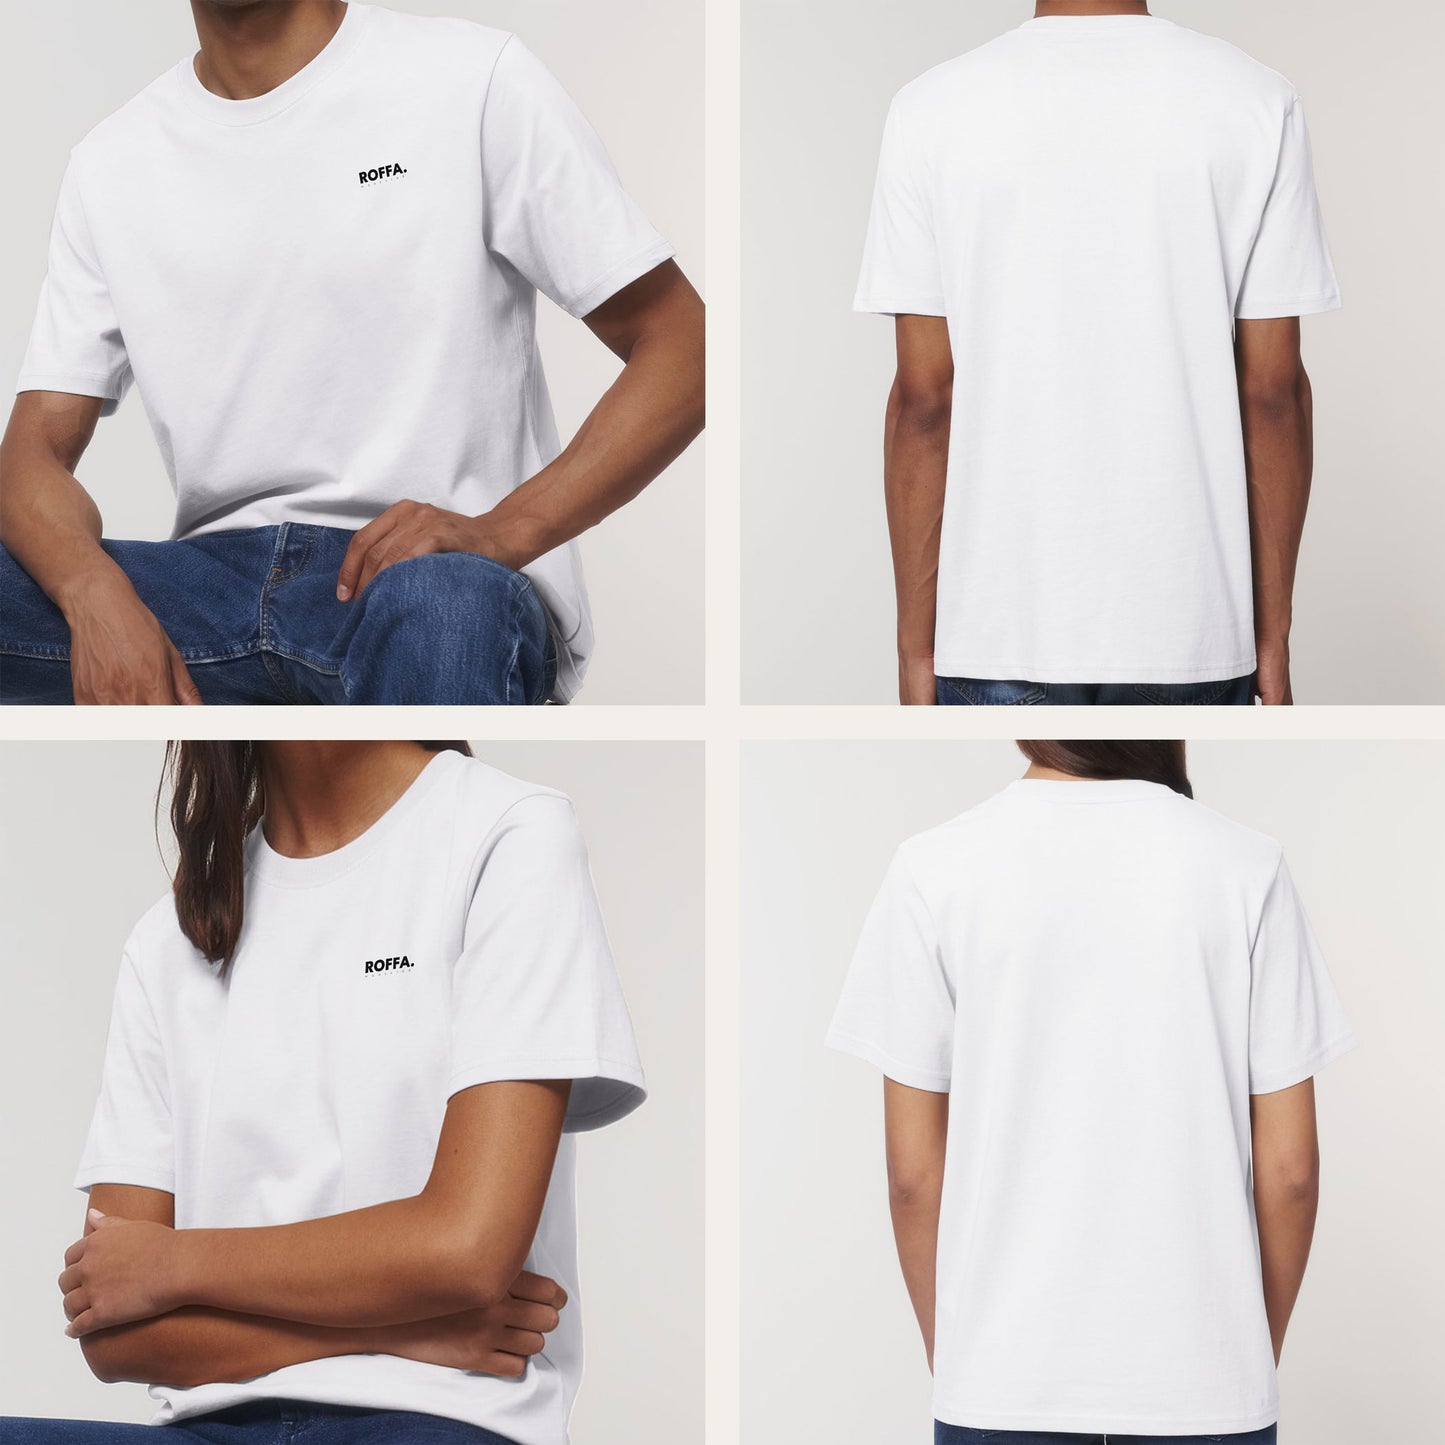 ROFFA. t-shirt heavy - 100% organisch katoen - logo links